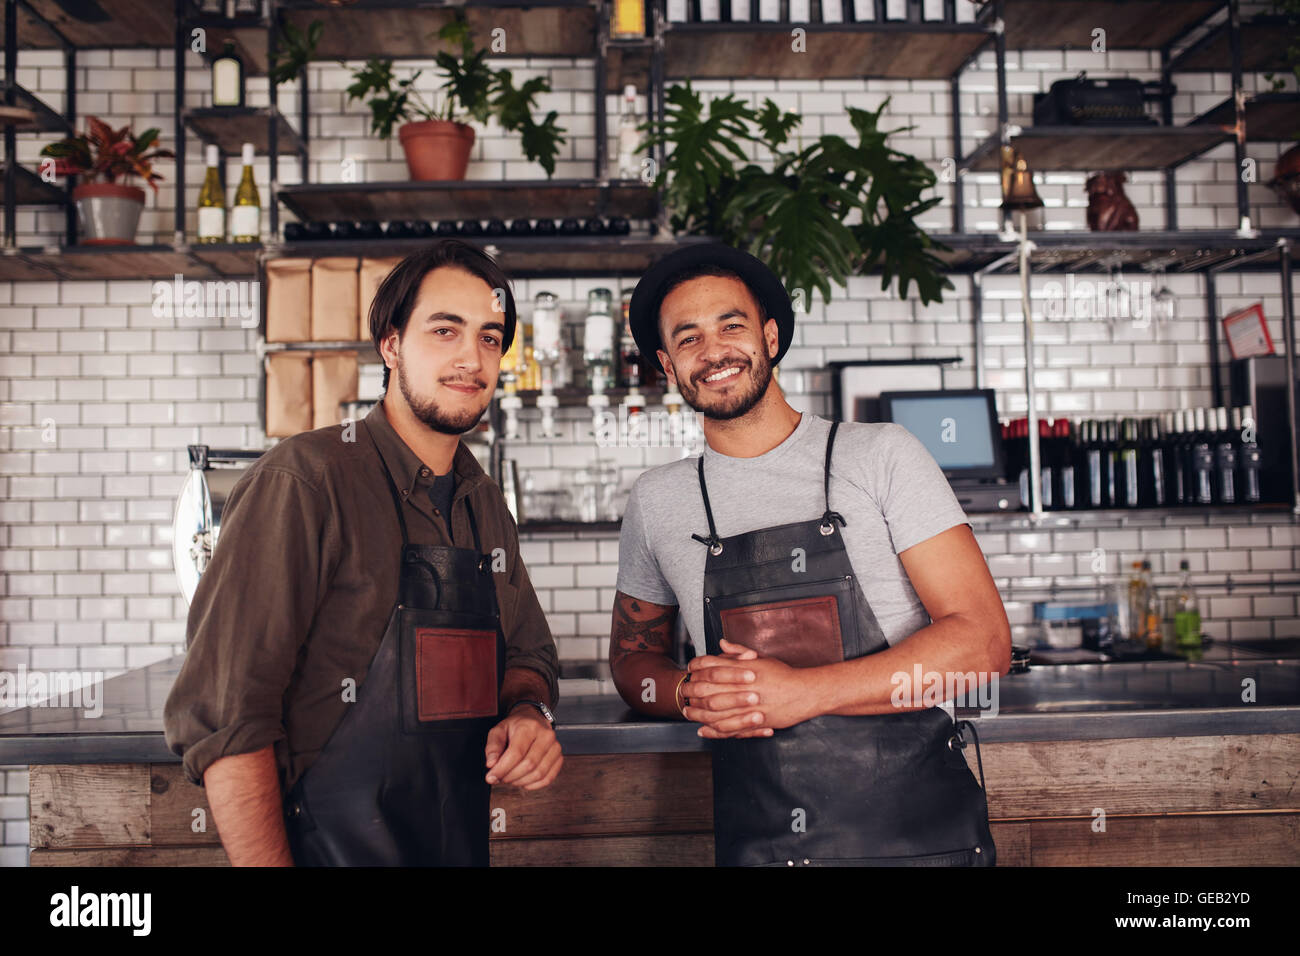 Porträt von zwei jungen Coffee-Shop-Besitzer an der Theke. Cafe Partner zusammenstehen und Blick in die Kamera. Stockfoto